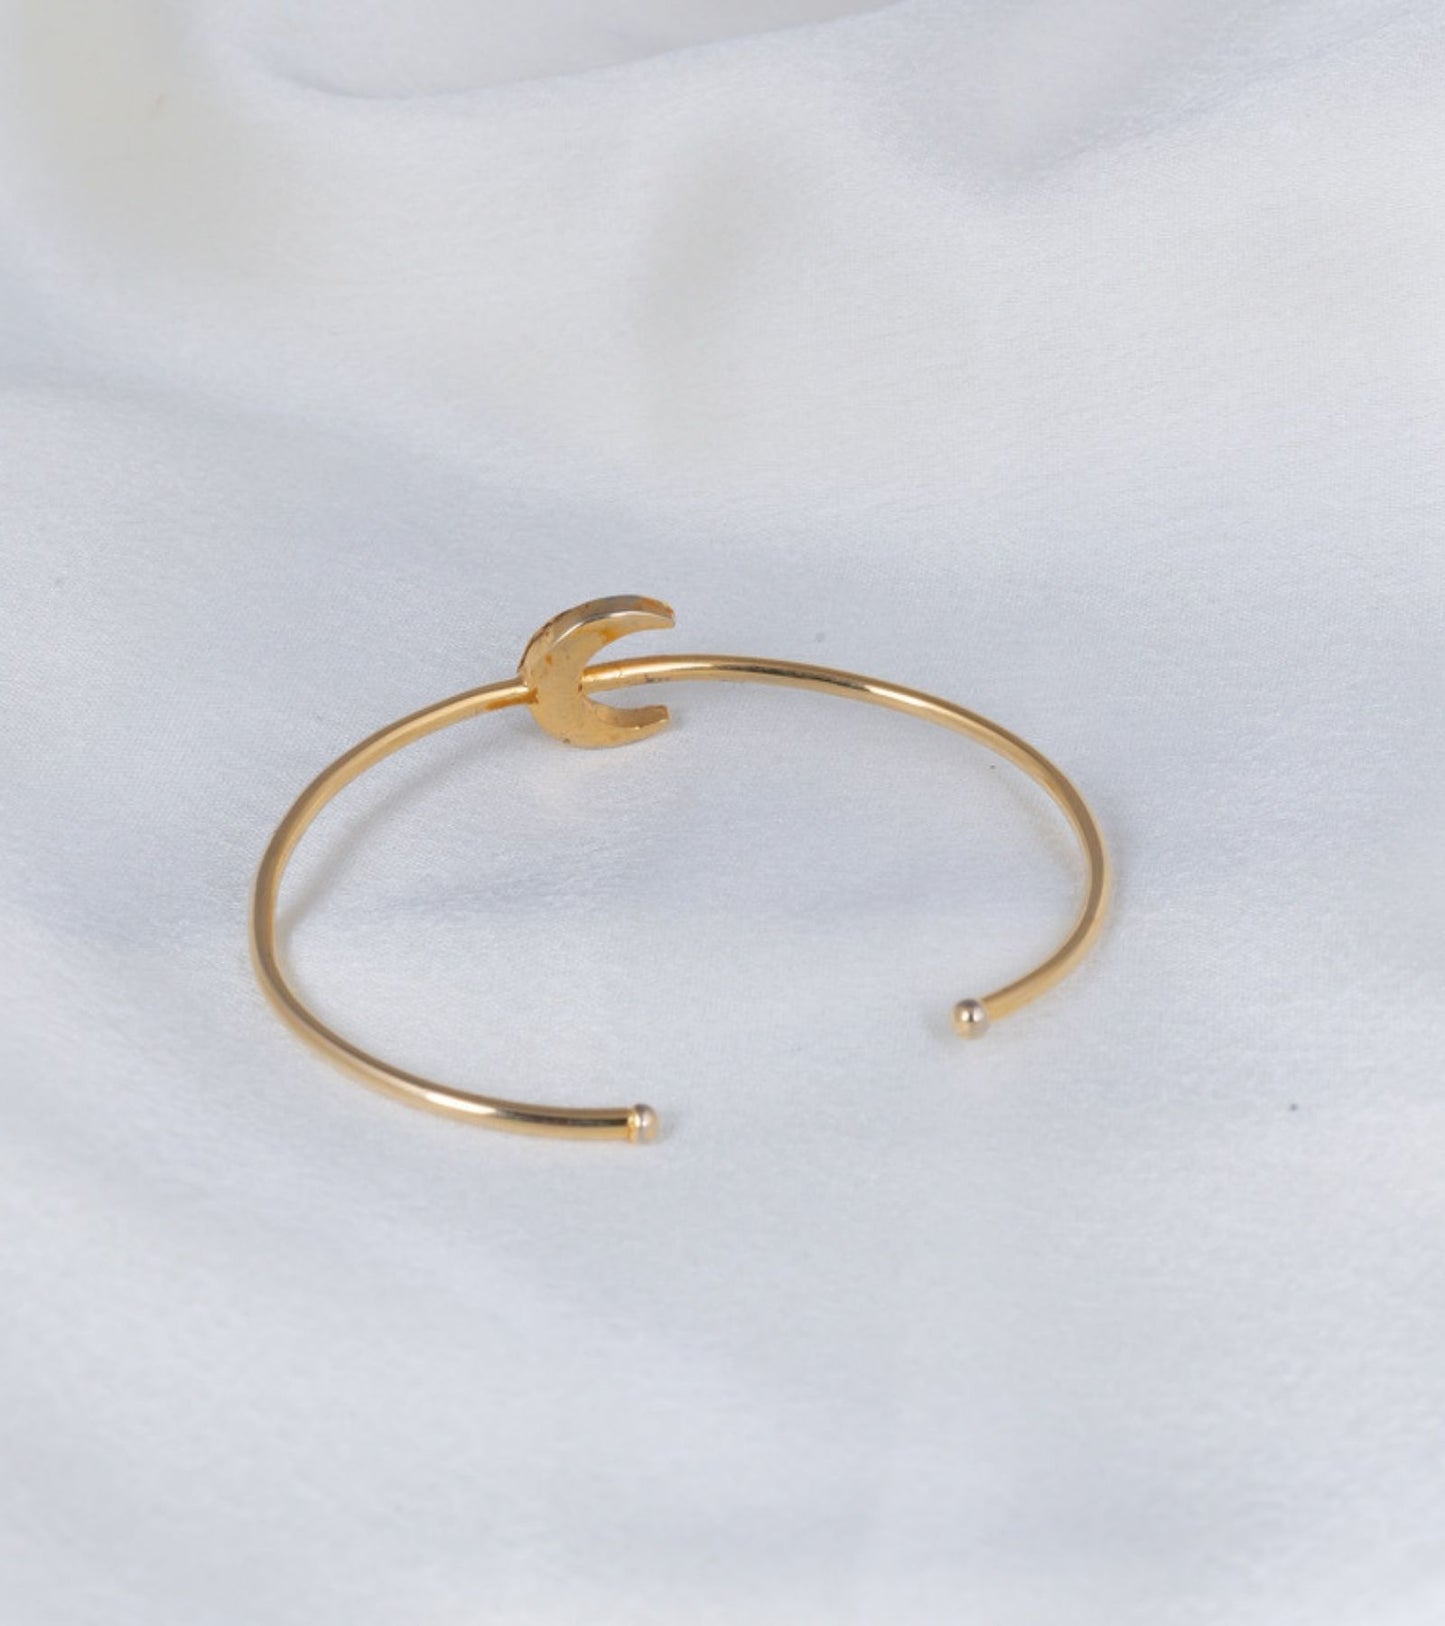 The Delicate Crescent Polki Bracelet in Gold